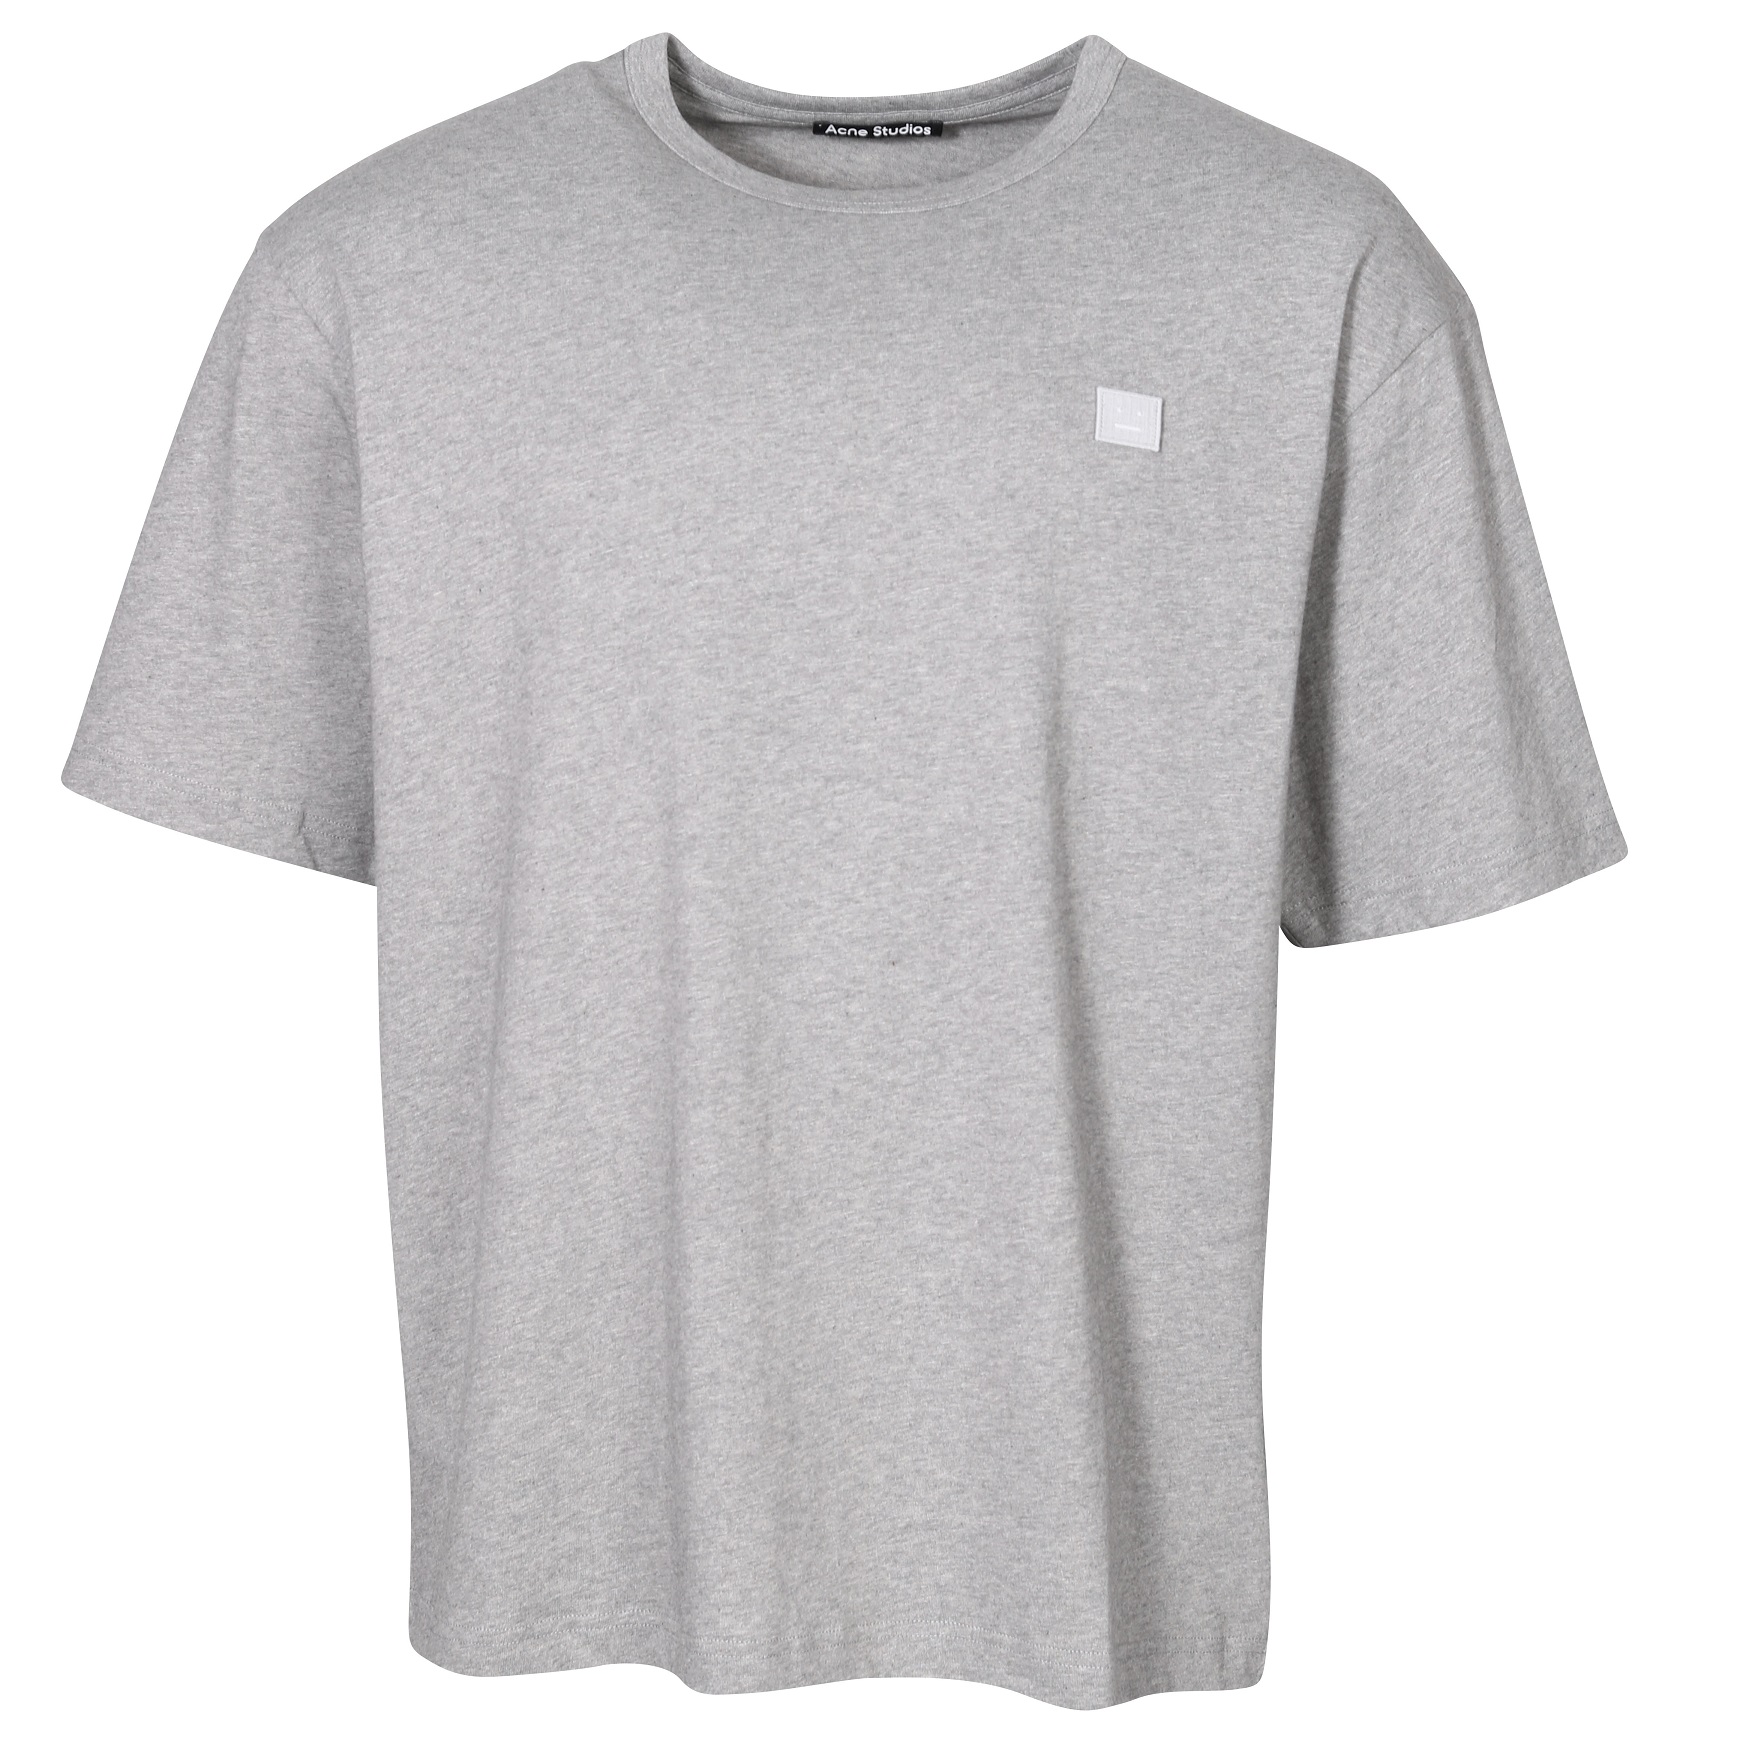 ACNE STUDIOS Unisex Oversize Face T-Shirt in Light Grey Melange